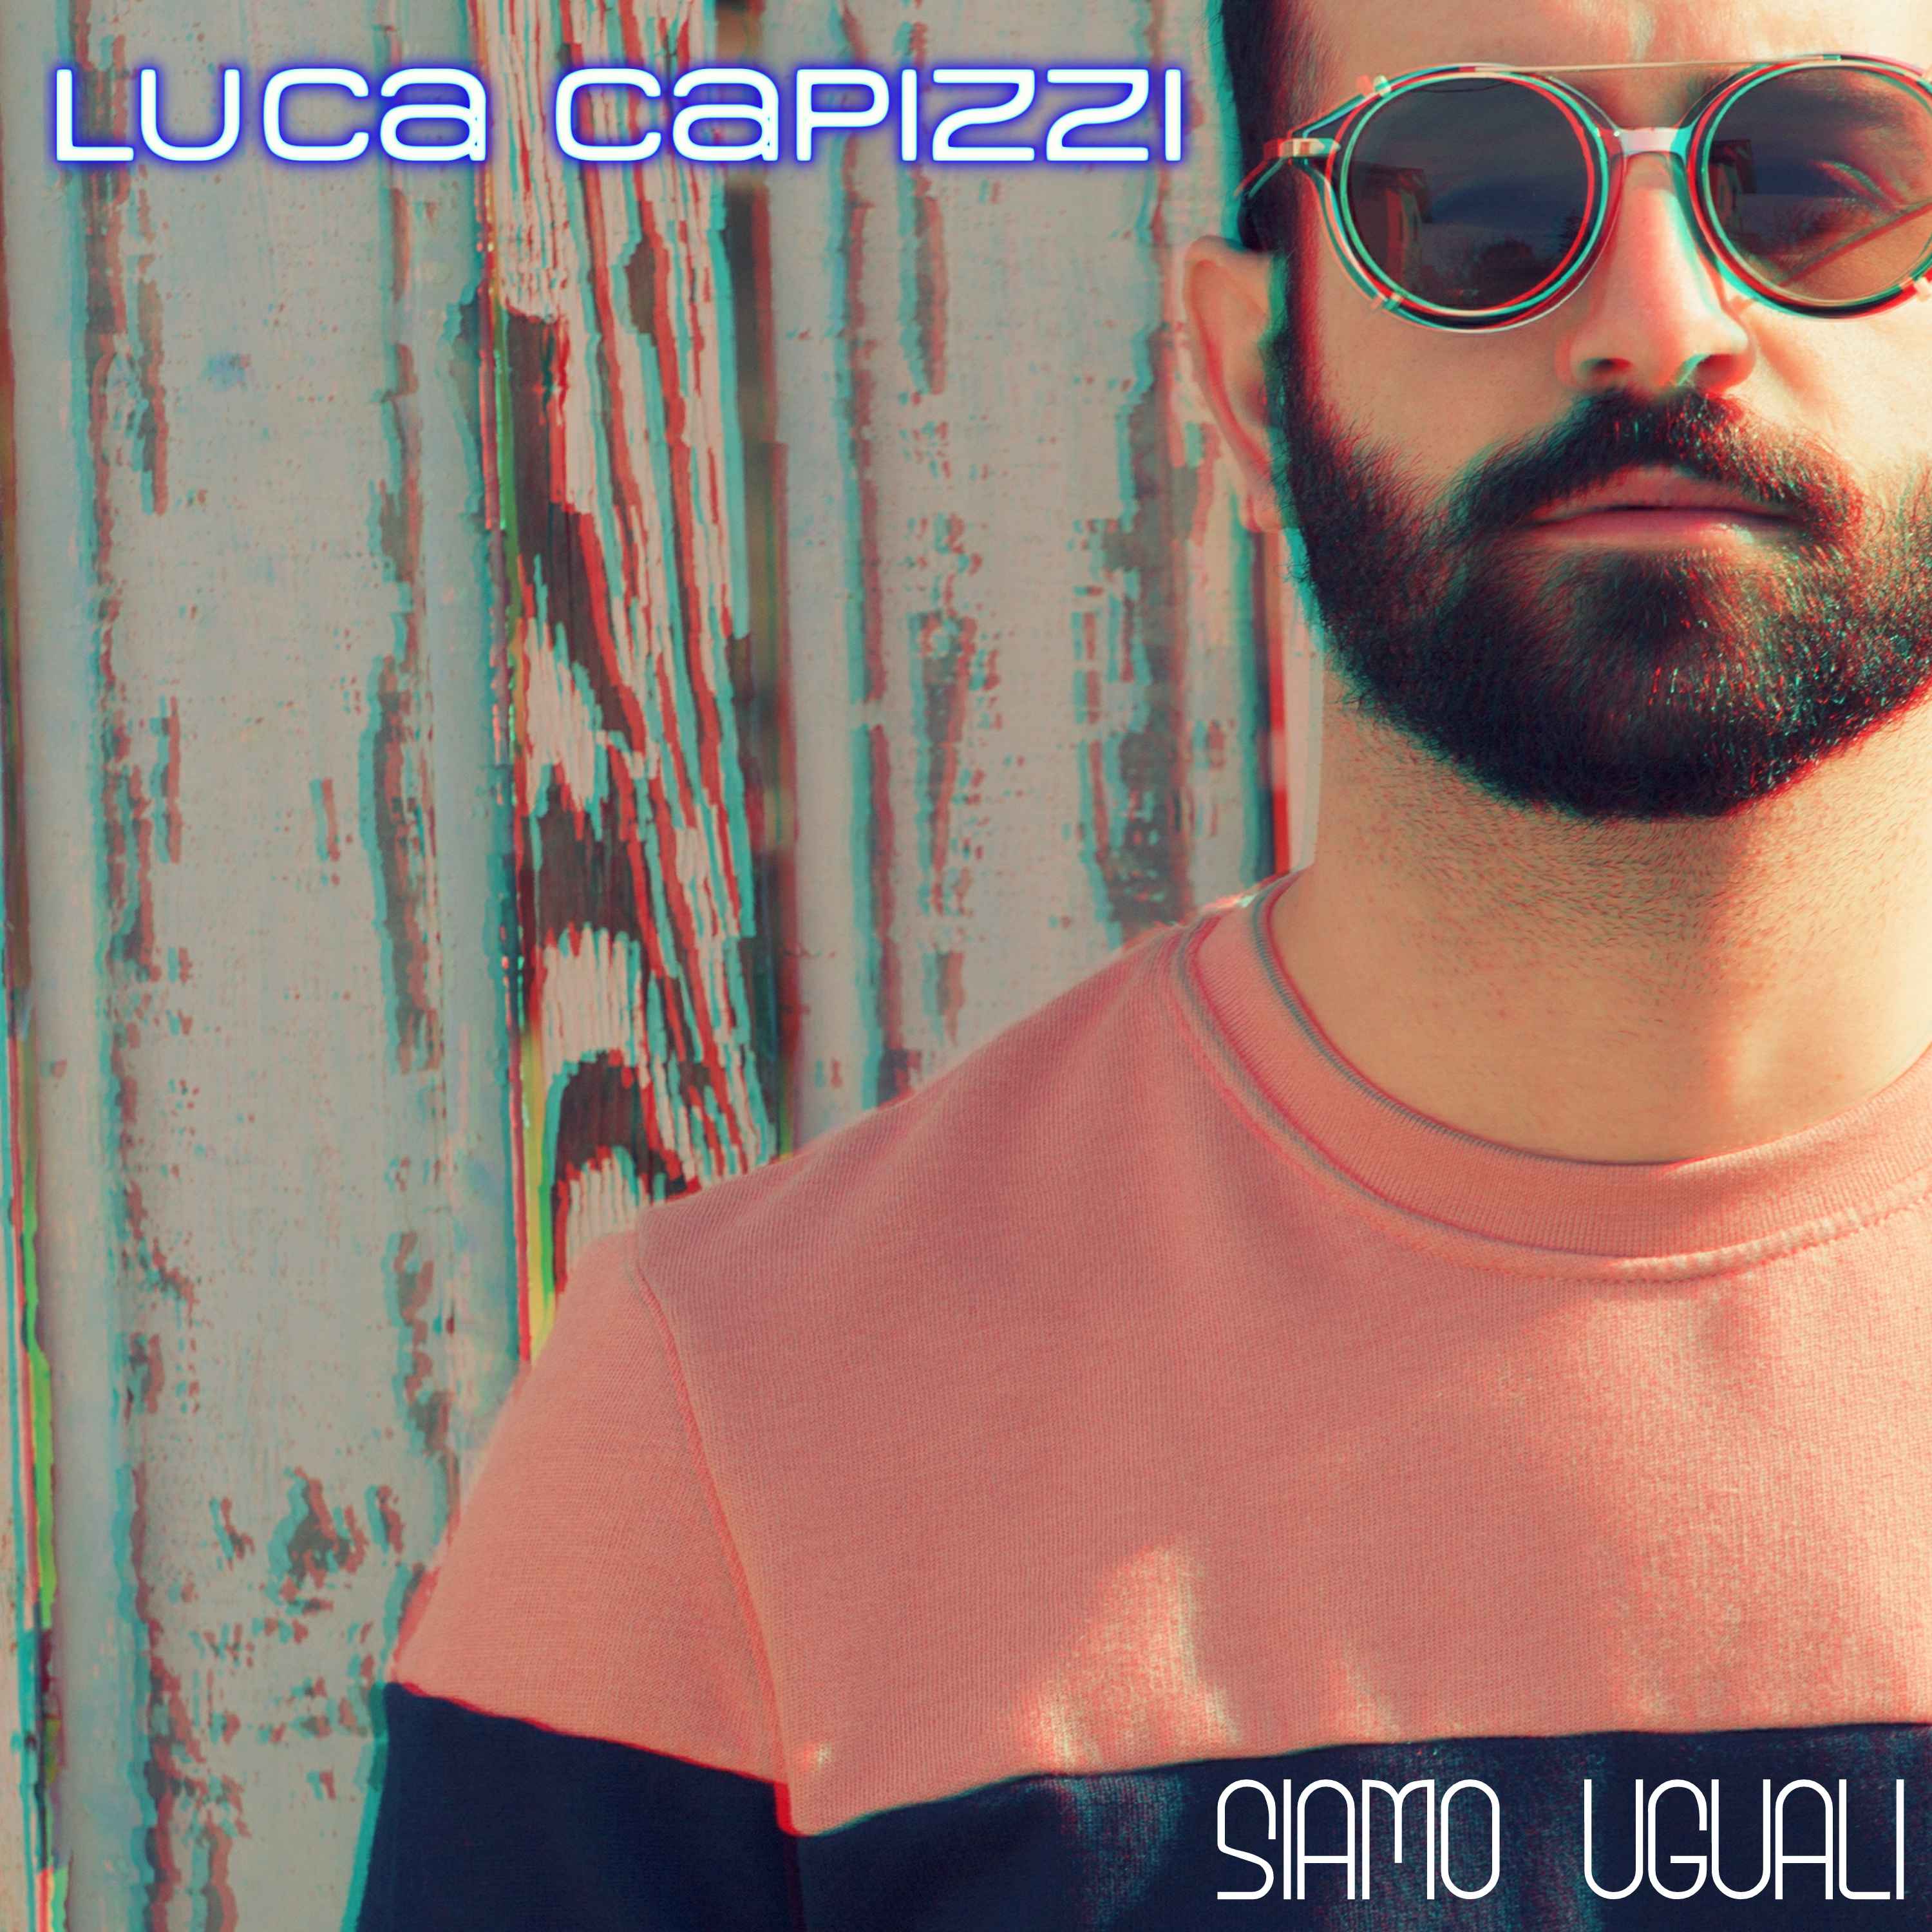 Luca Capizzi  in radio dall’8 maggio con il nuovo singolo Siamo uguali